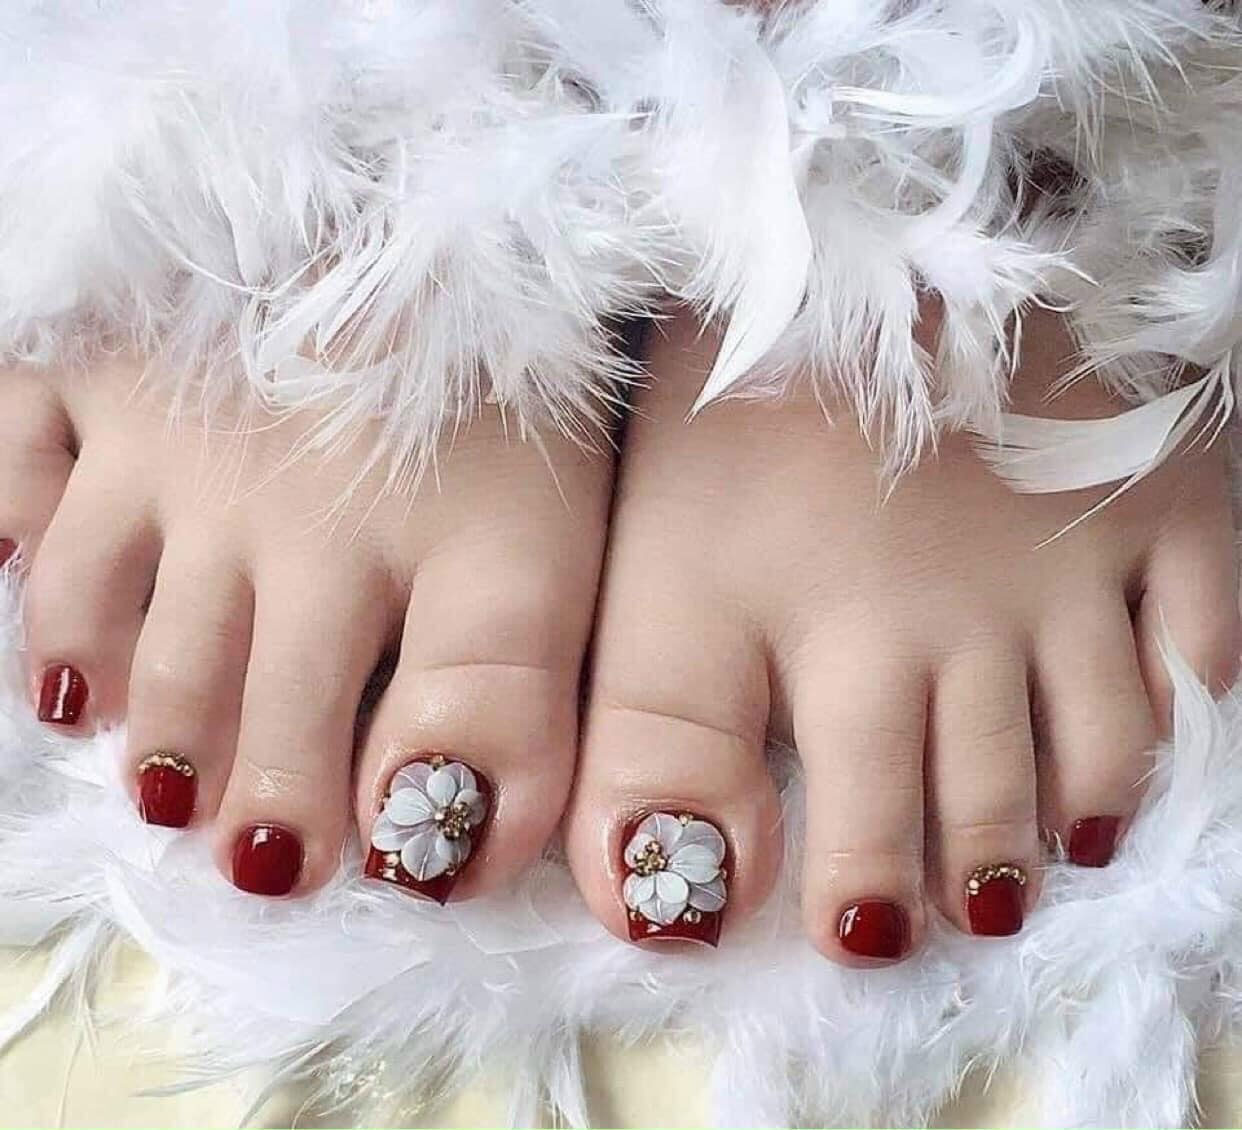 Vẽ móng chân màu đỏ mận đỏ rượu đẹp mới tìm hiểu 91 nail chân đẹp màu đỏ  mới nhất